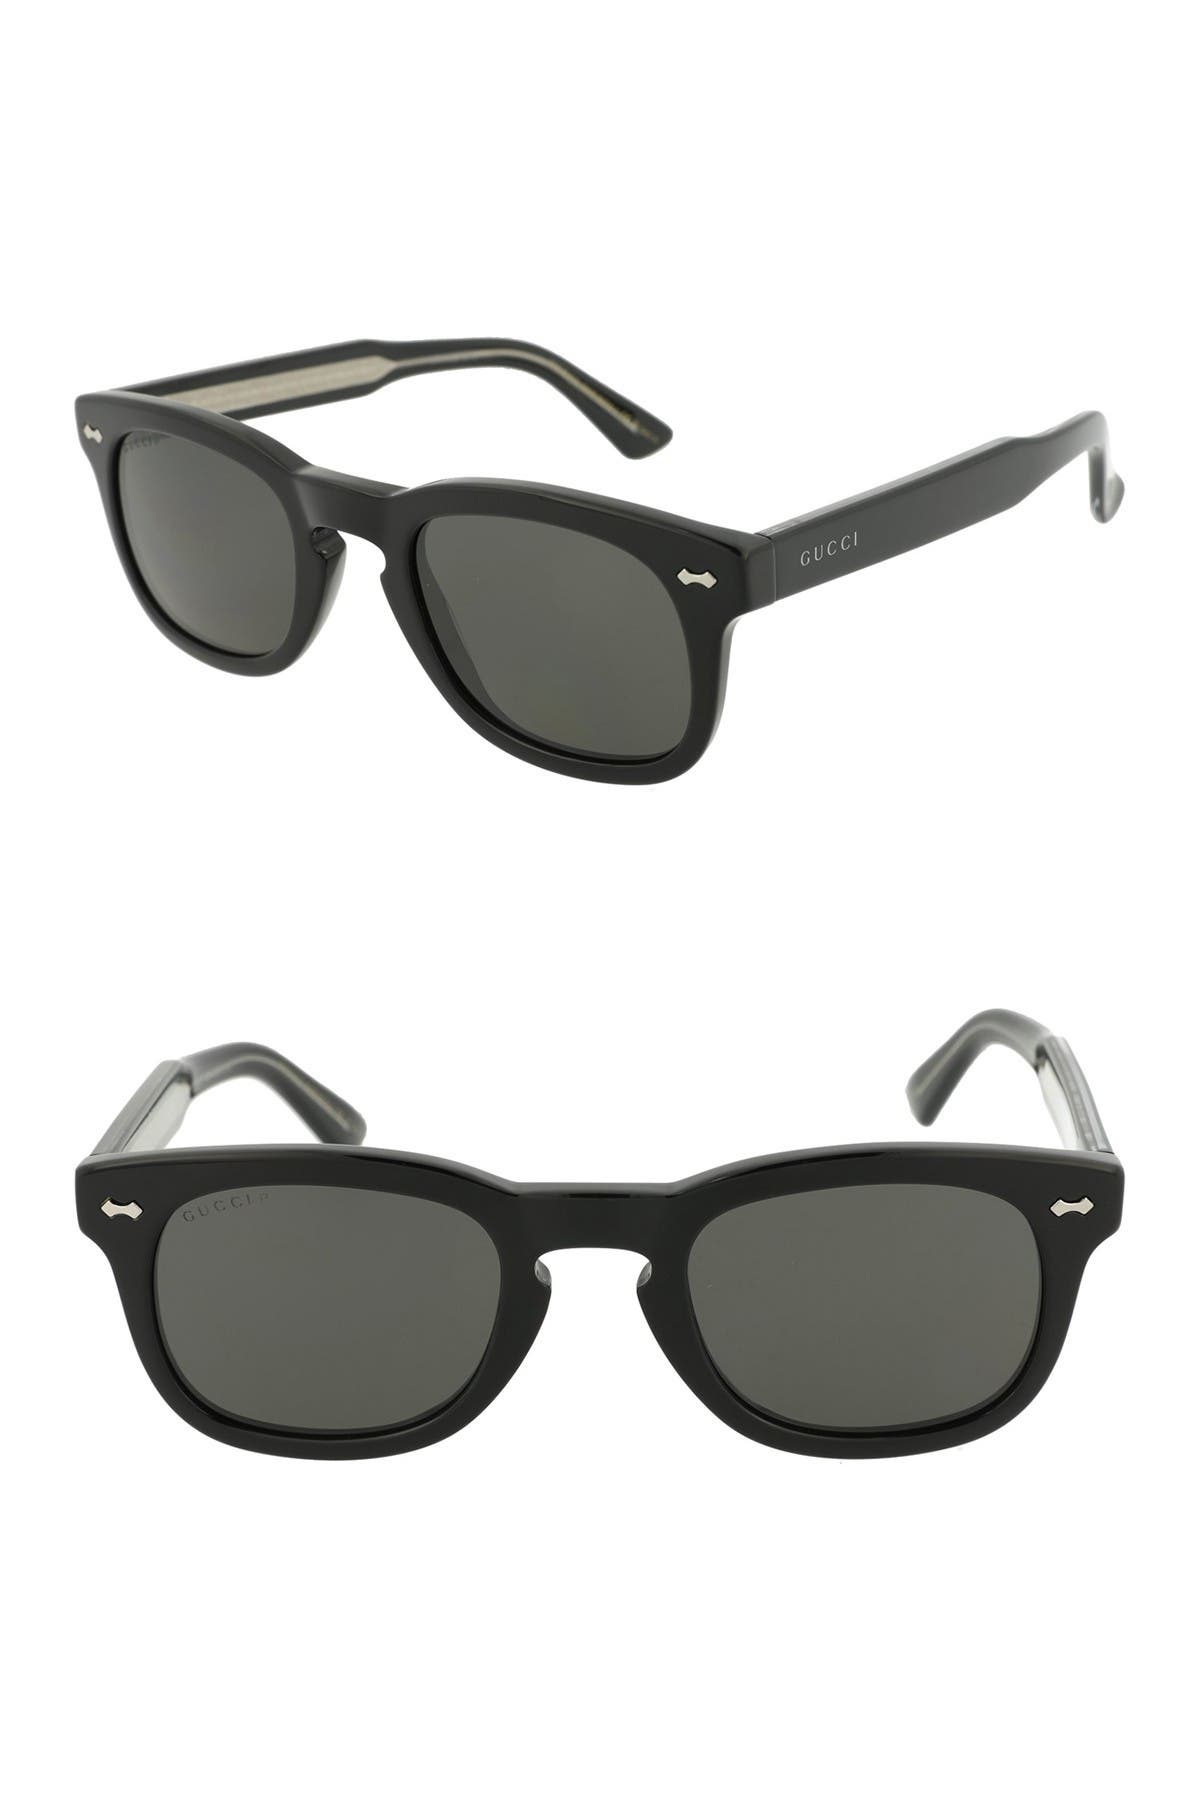 gucci sunglasses on sale